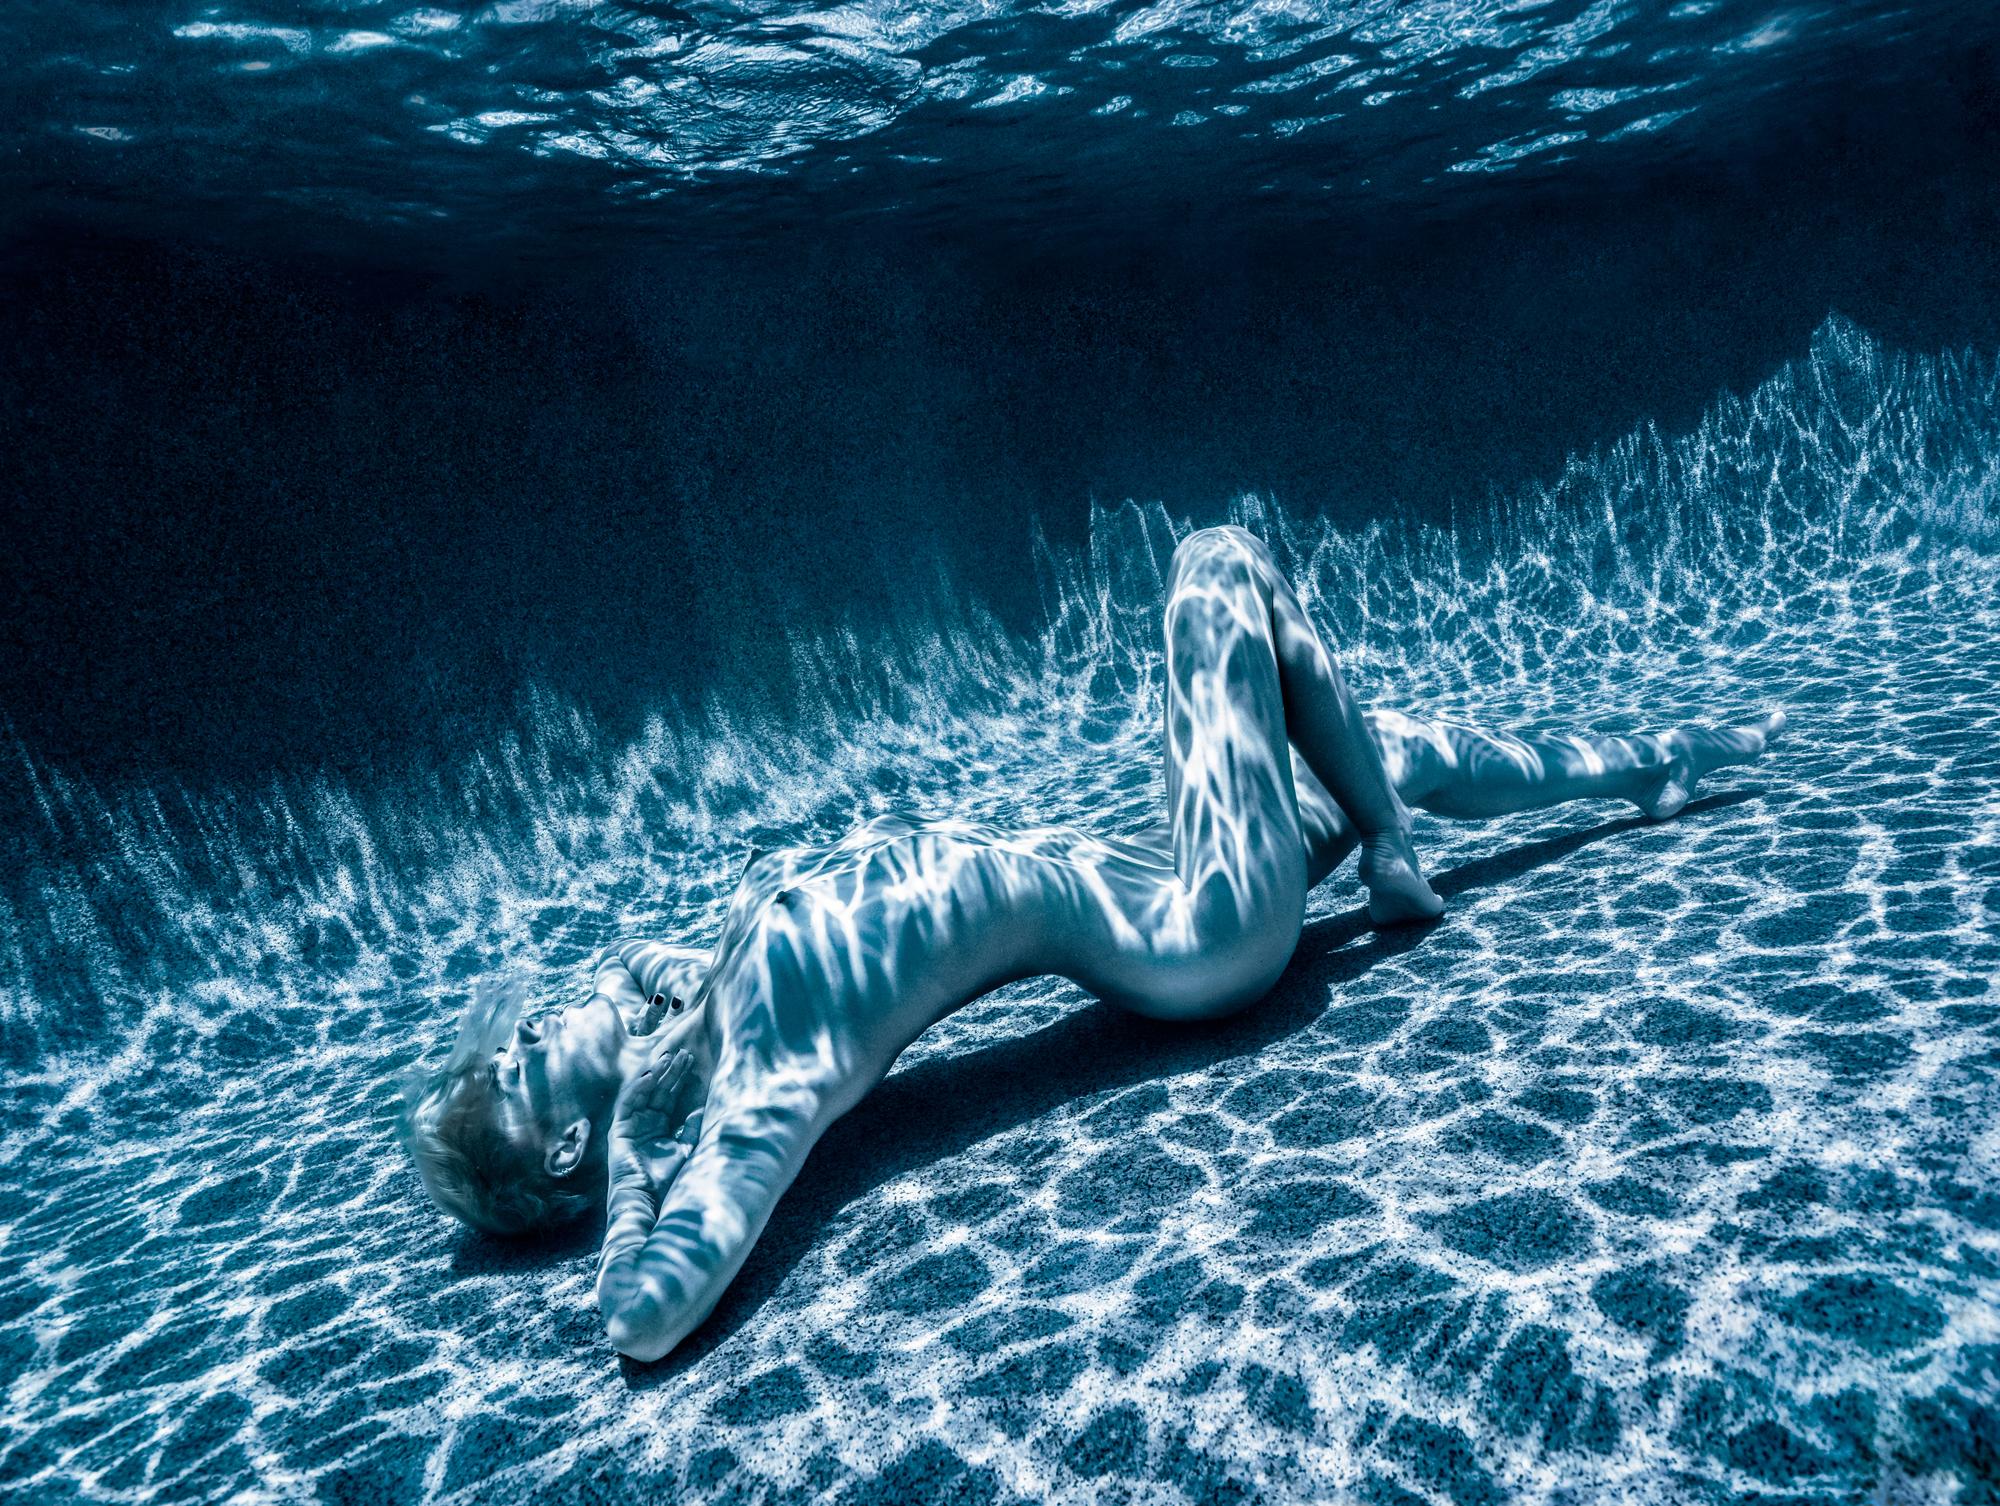 Nude Photograph Alex Sher - La lumière de lune - photographie de nu sous-marine - impression pigmentaire d'archives 18x24